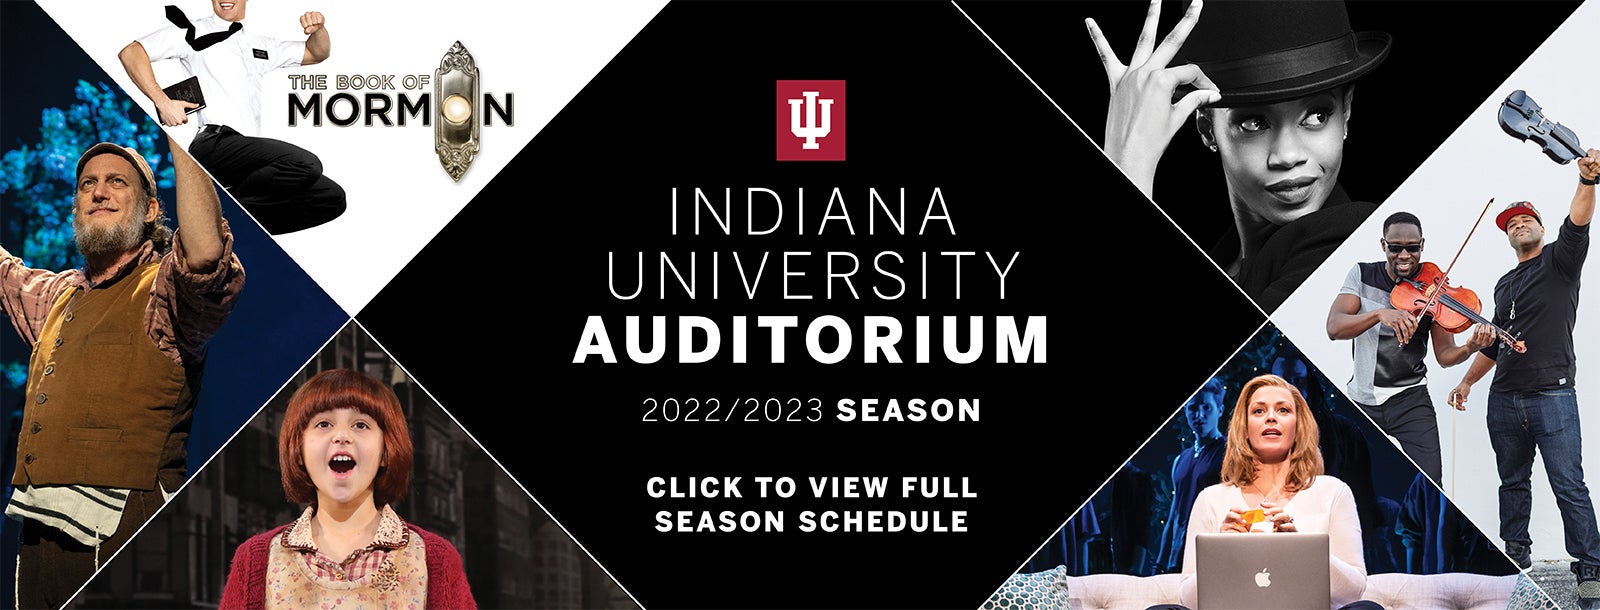 IU Auditorium Announces 20222023 Season Schedule Indiana University